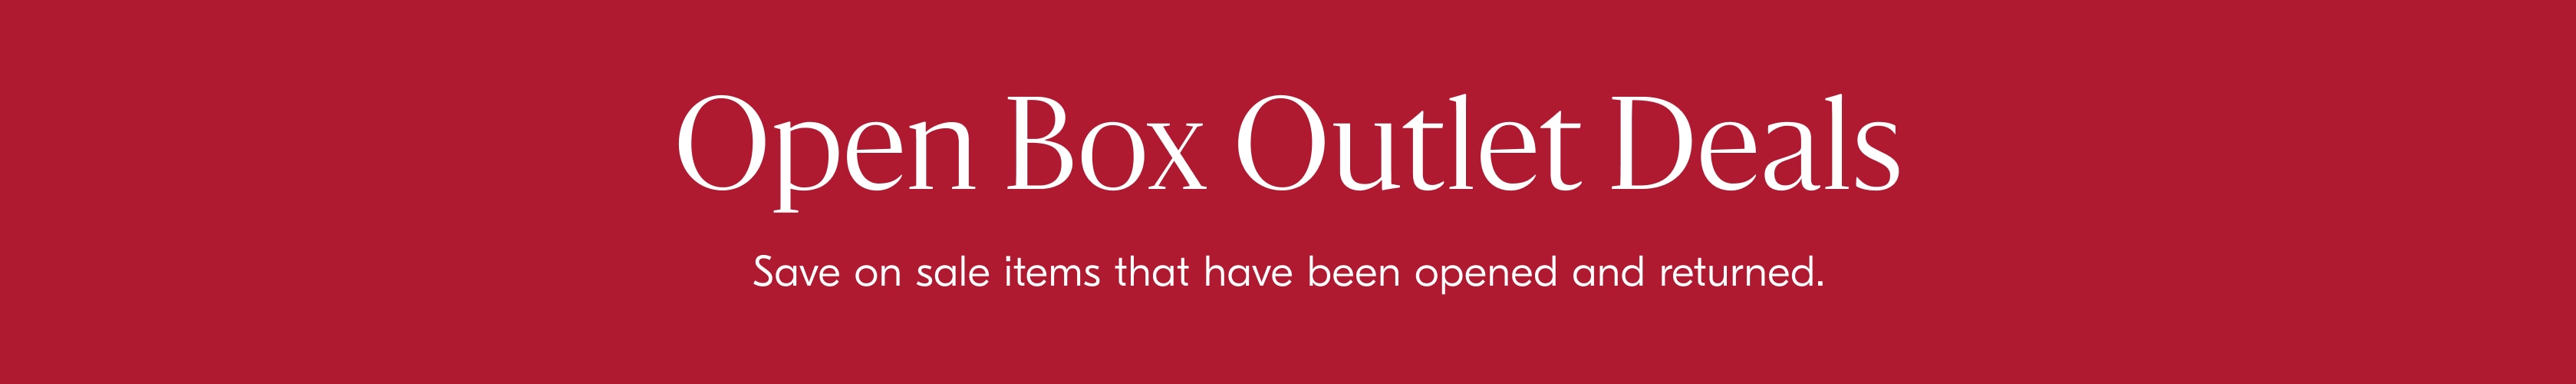 Open Box Outlet Deals